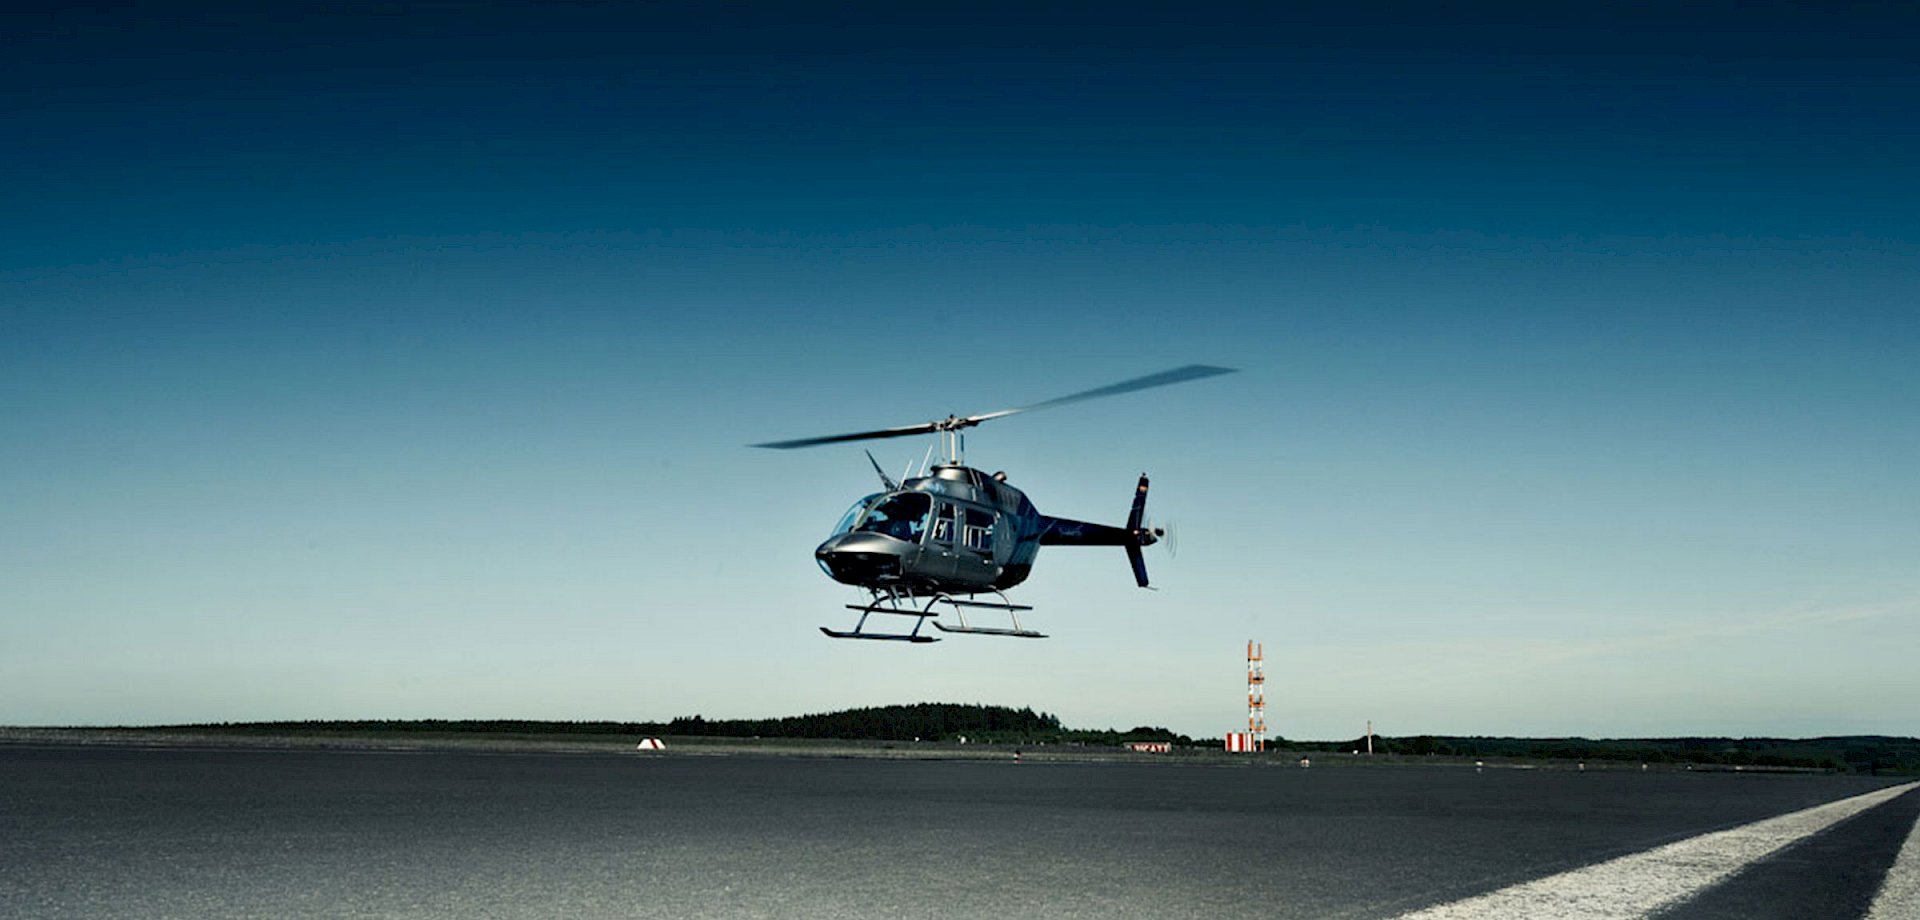 Hubschrauber im Landeanflug